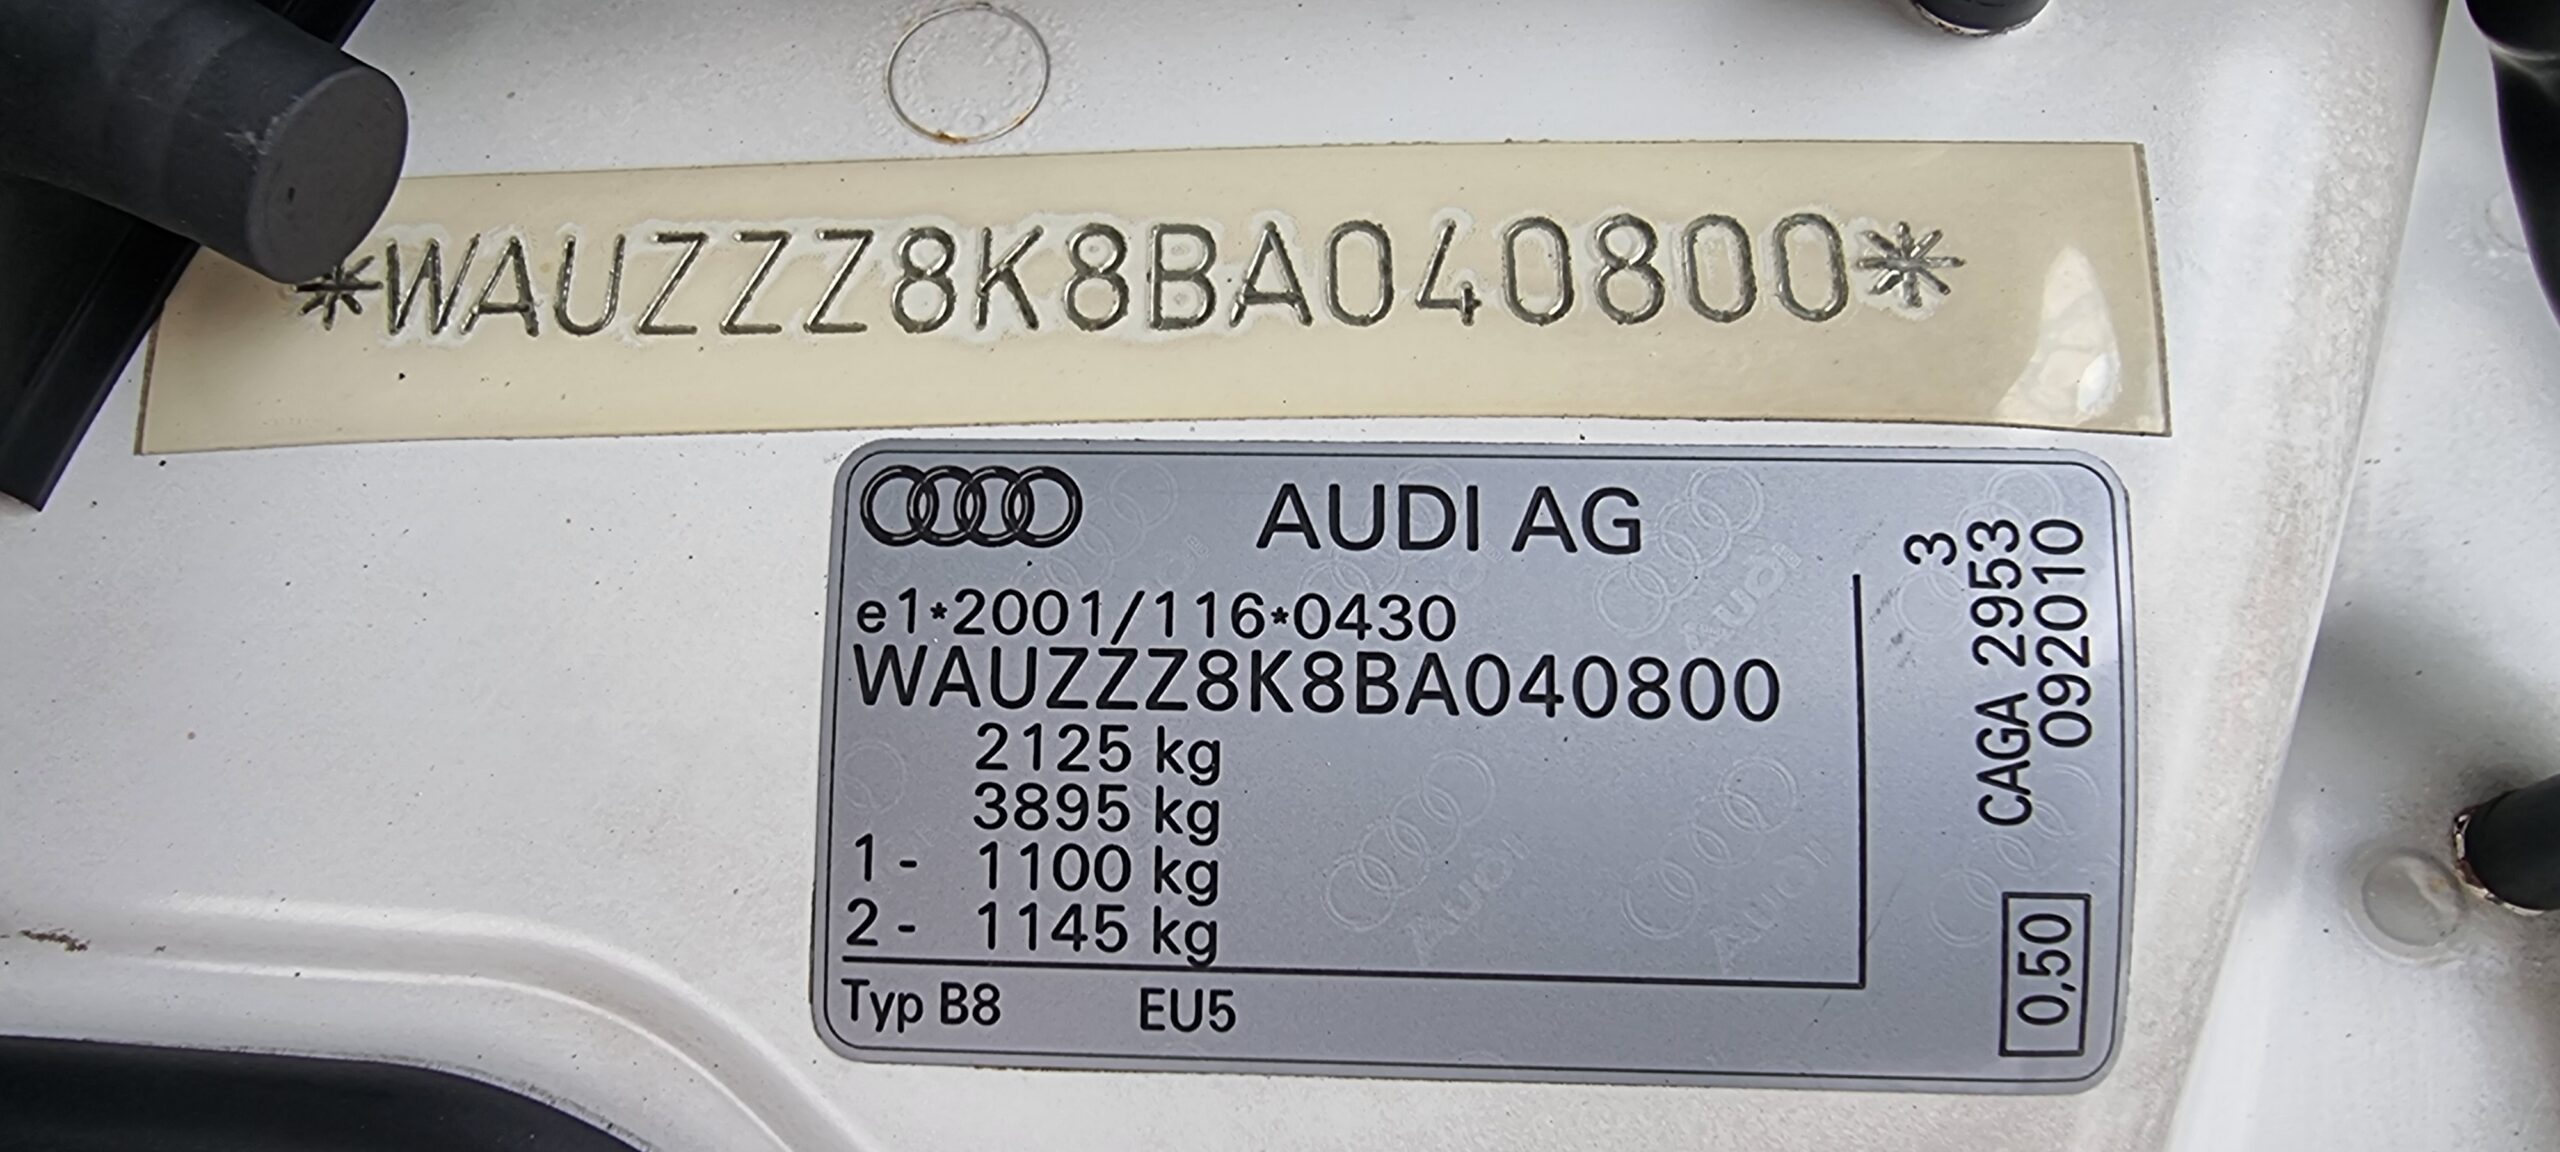 Audi A4 S-Line 2.0 TDI